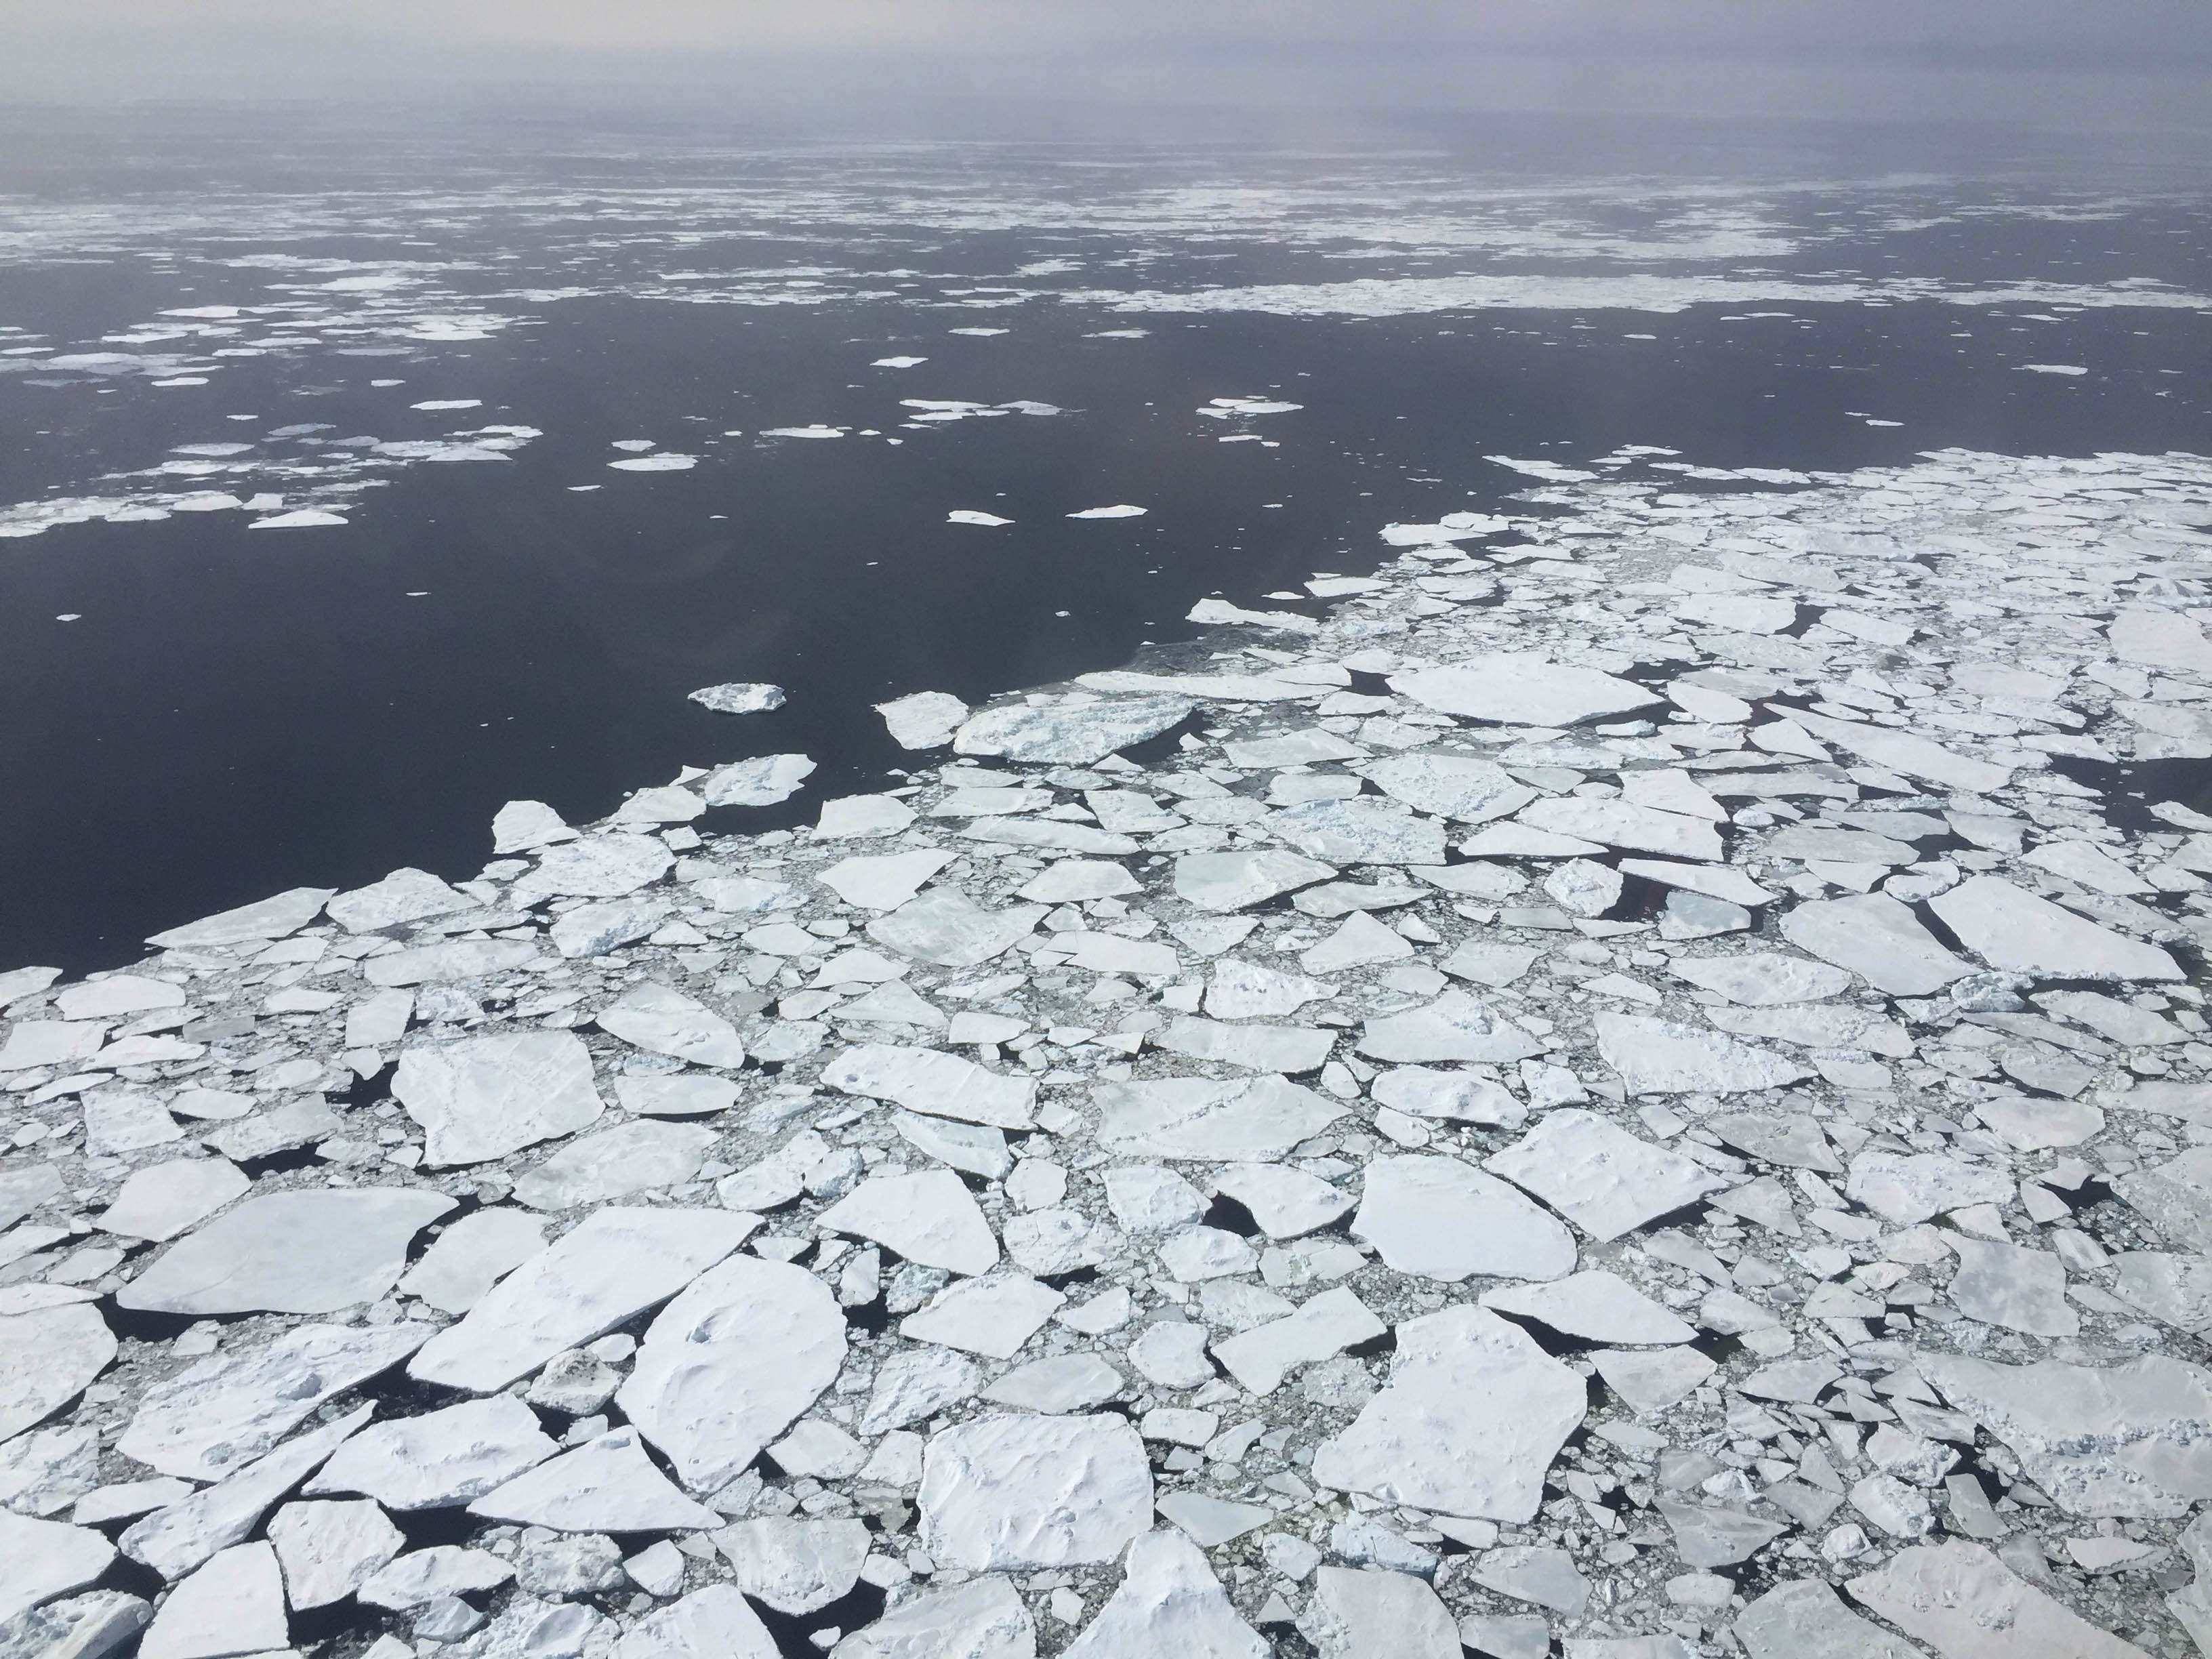 Broken ice floes in the Antarctic